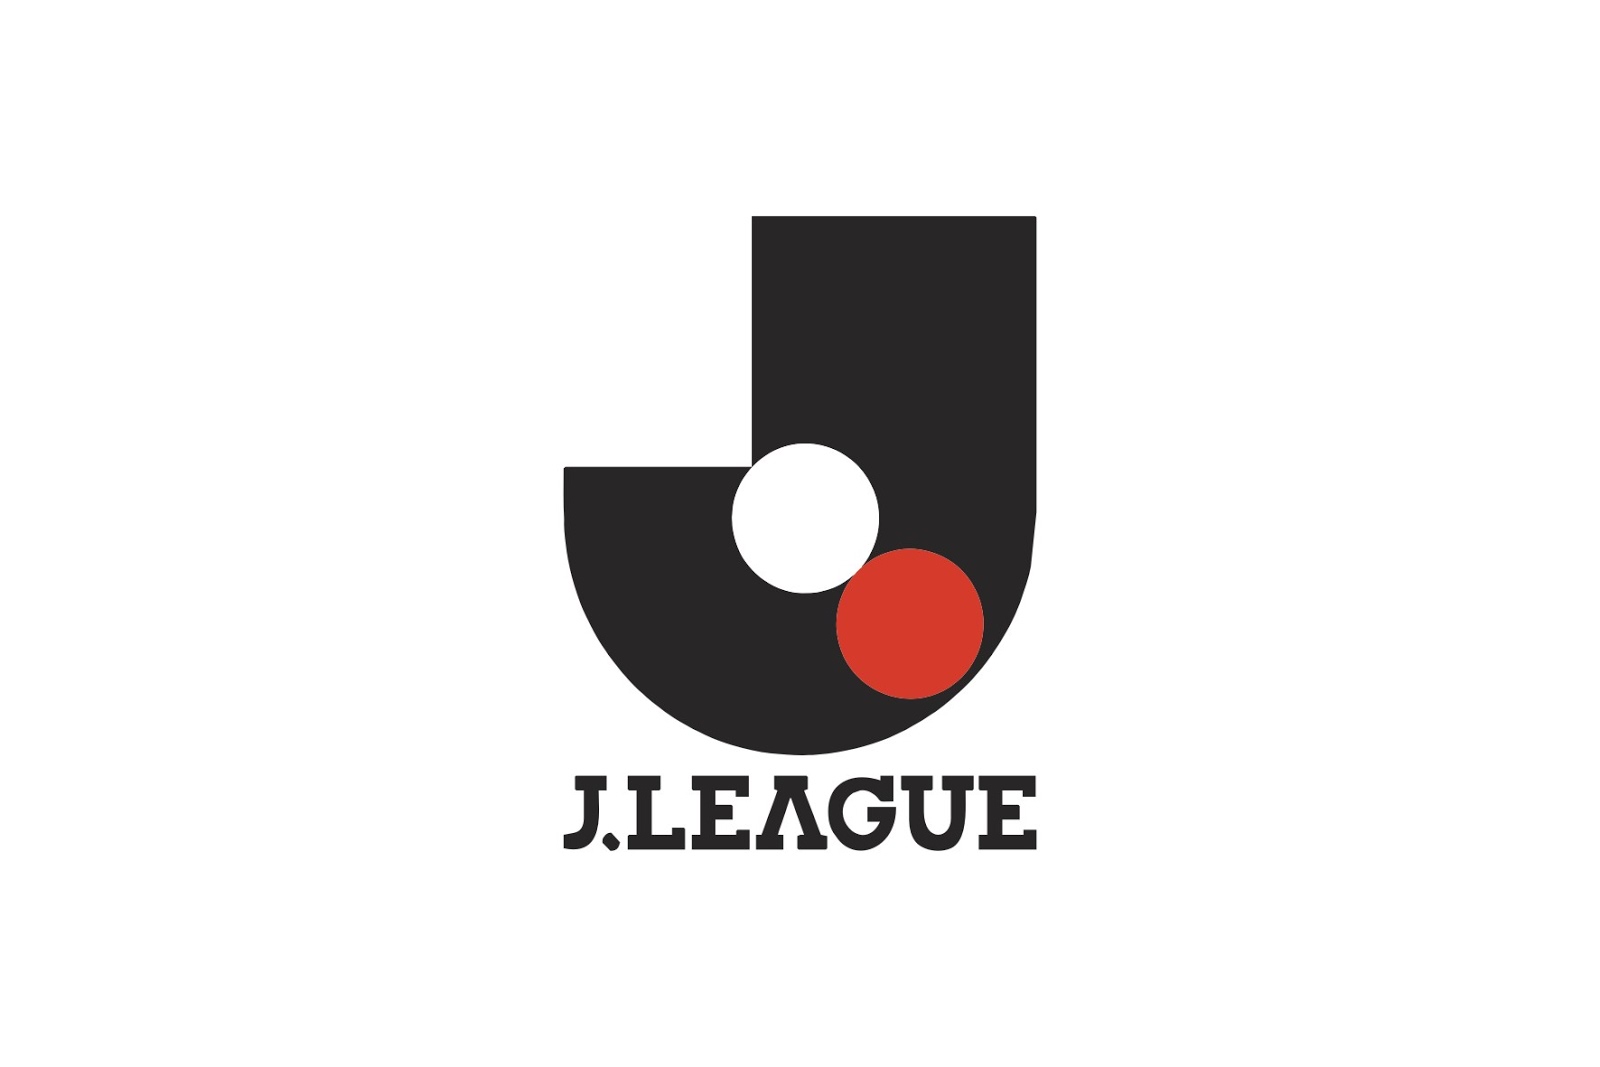 J League – Niềm Tự Hào Bóng Đá Của Người Dân Nhật Bản